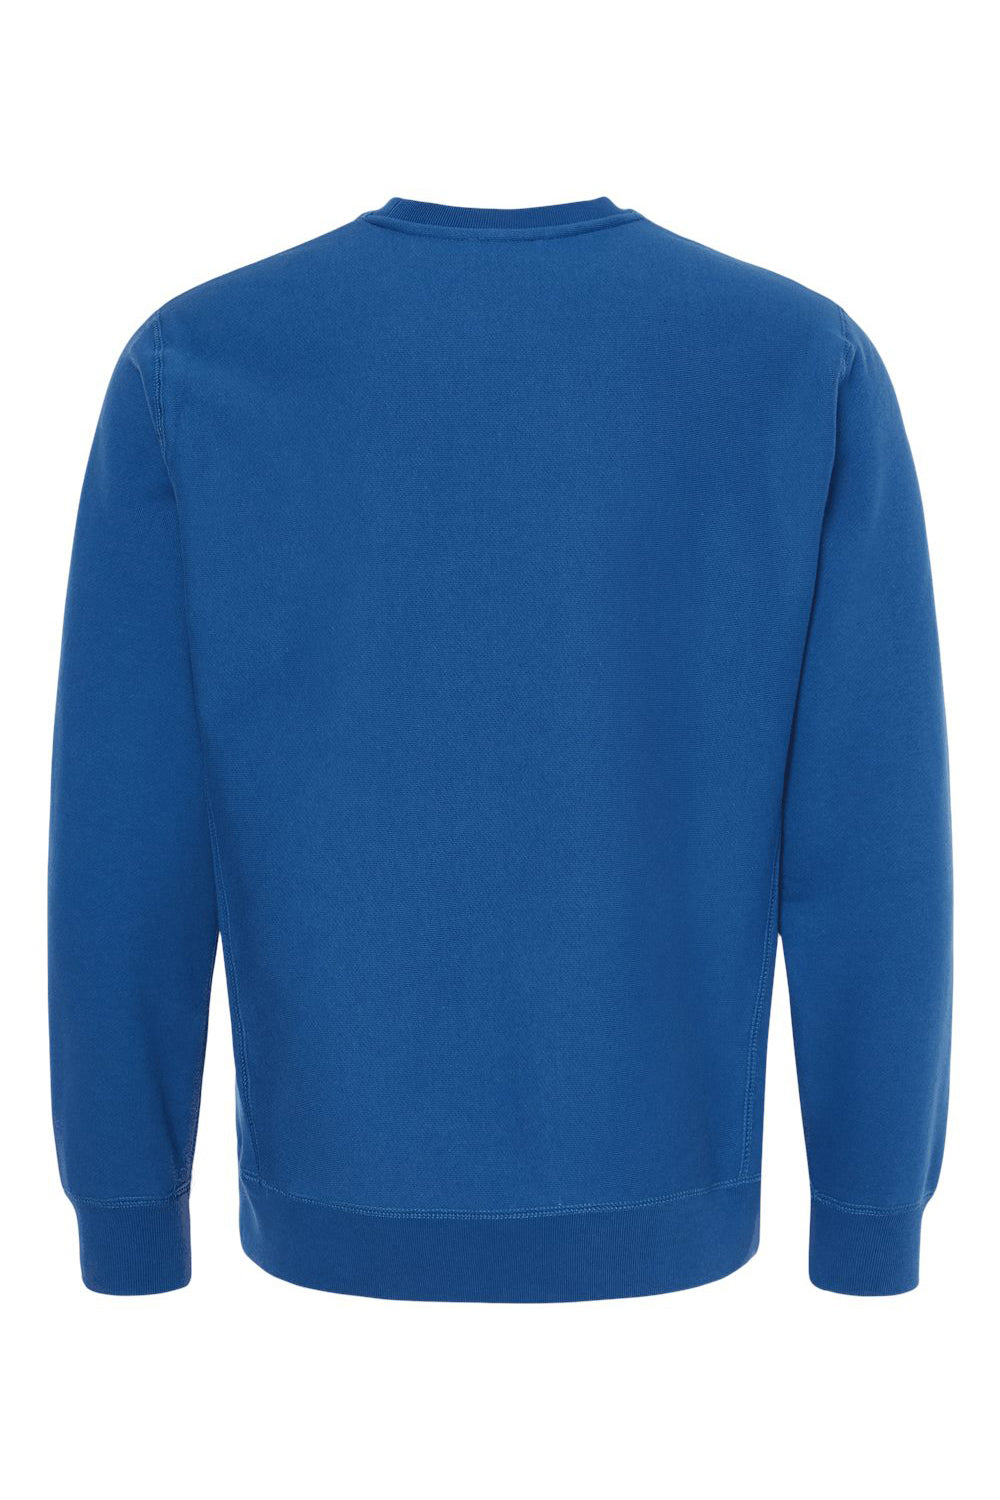 Independent Trading Co. IND5000C Mens Legend Crewneck Sweatshirt Royal Blue Flat Back